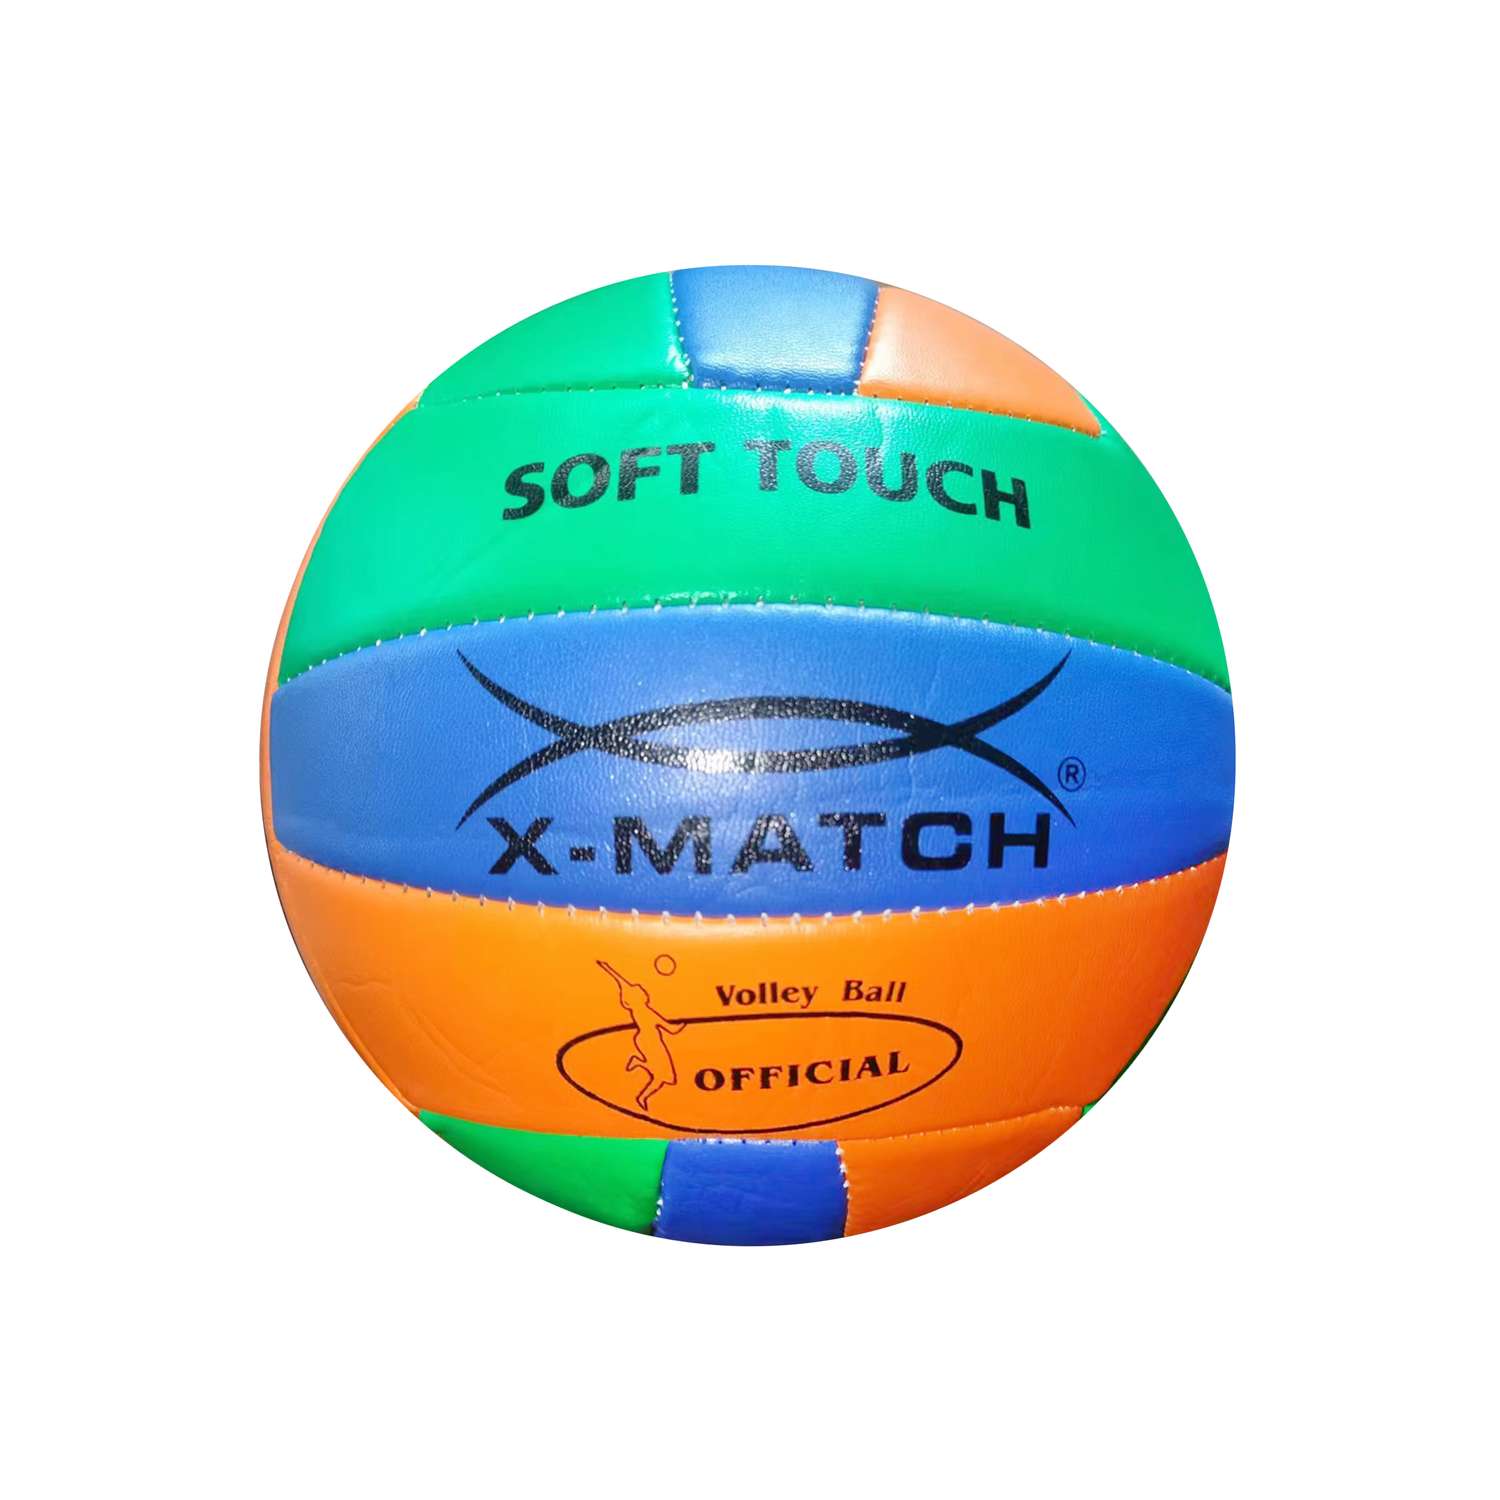 Мяч волейбольный X-Match 260-280 г. 2.0 мм. PVC - фото 1